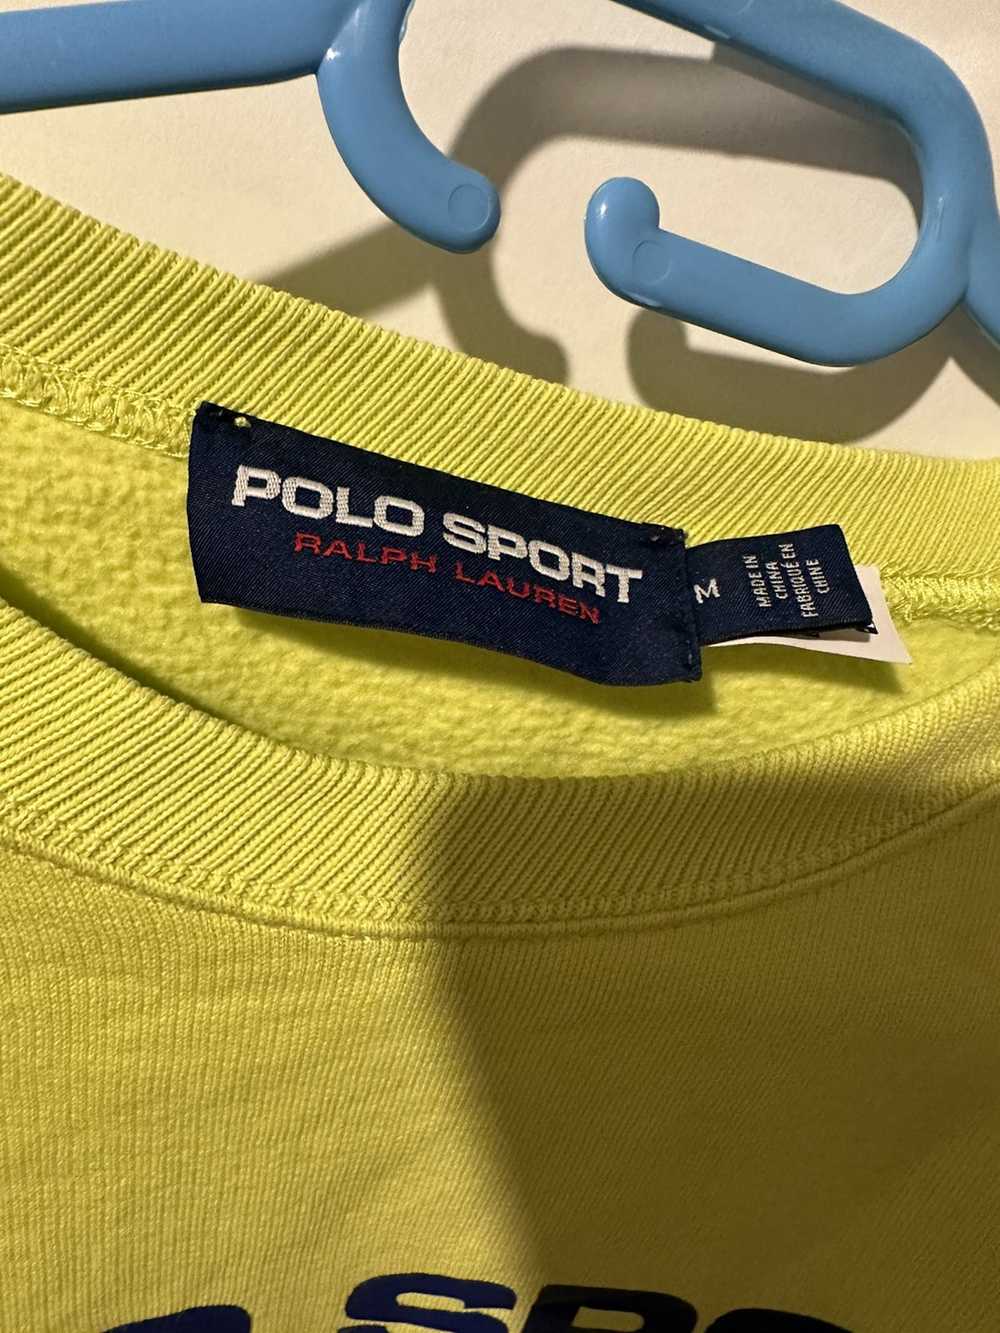 Polo Ralph Lauren Polo Sport Pullover Size S Polo… - image 5